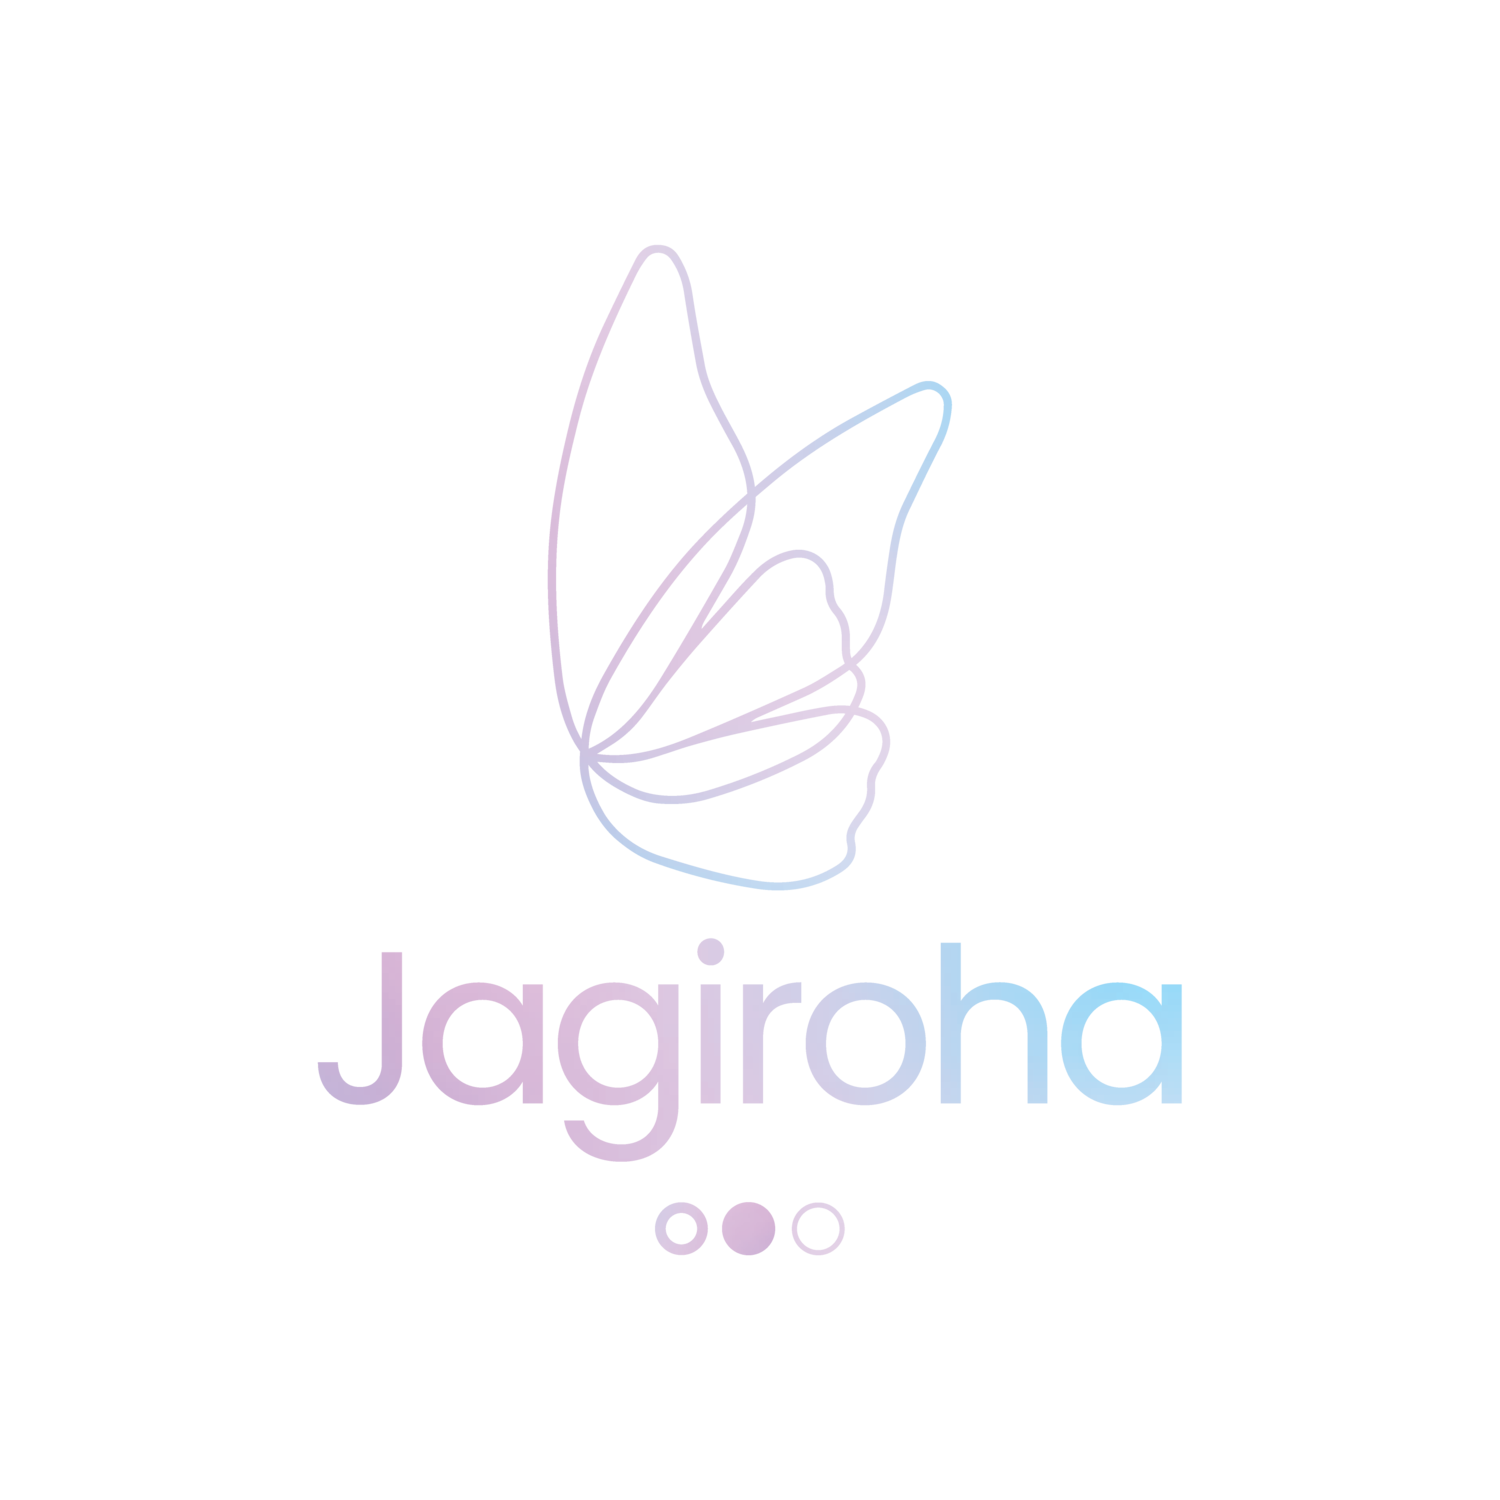 Jagiroha